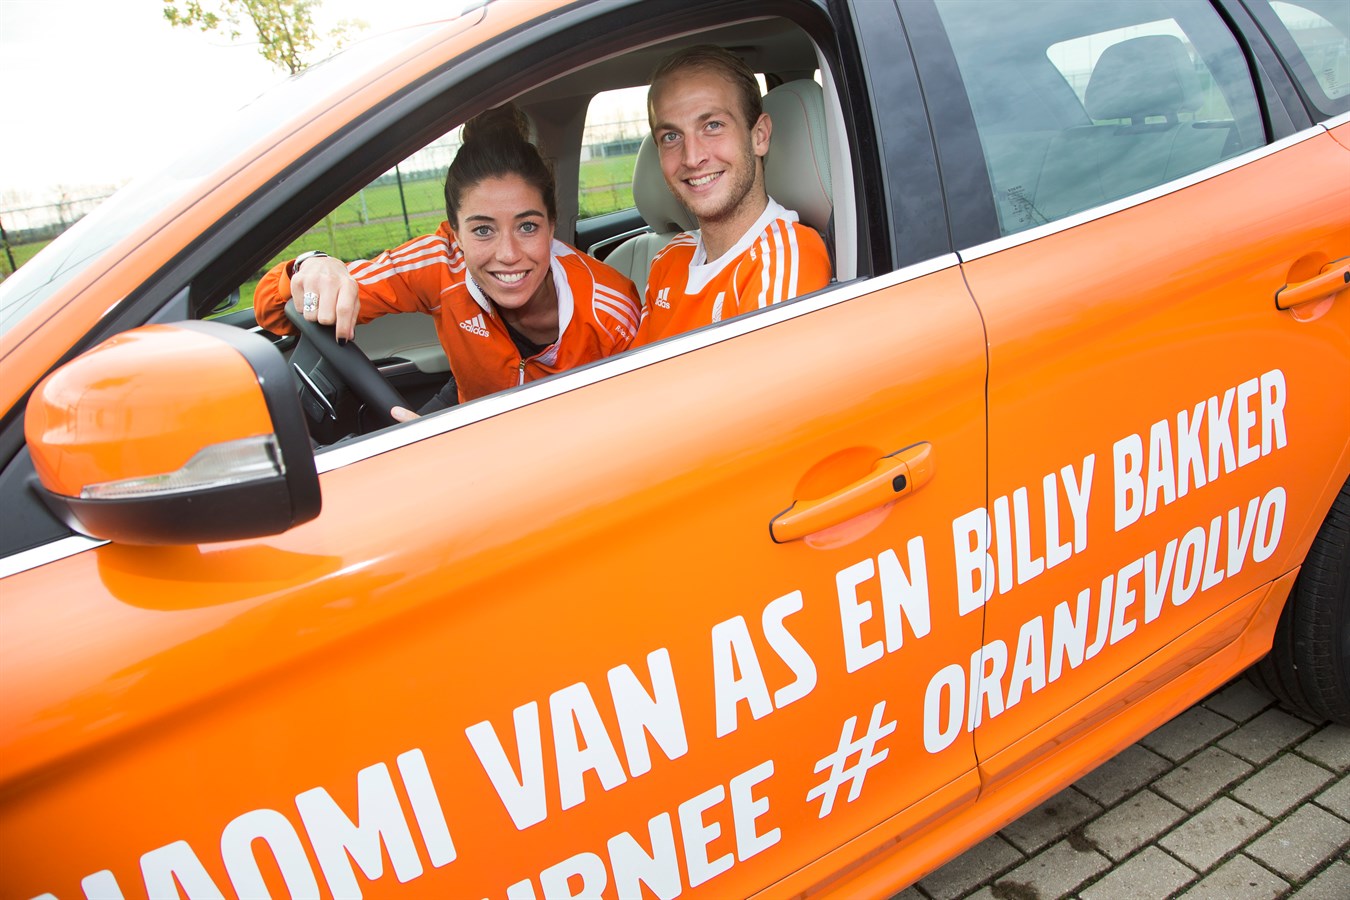 Hockeytoppers Naomi van As en Billy Bakker in #OranjeVolvo langs hockeyclubs